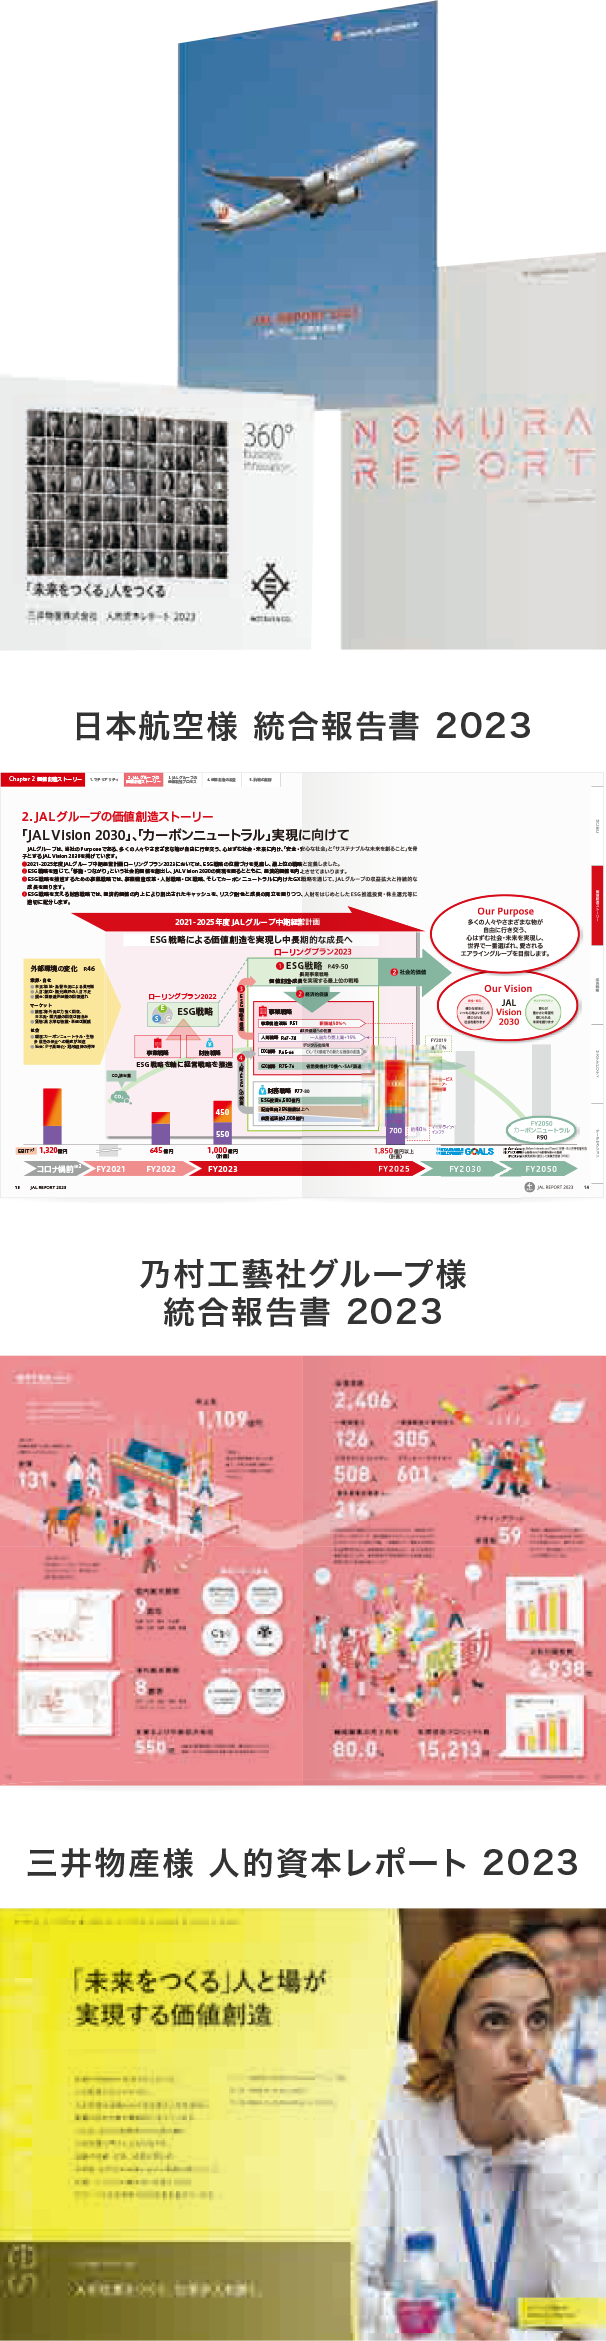 1. 日本航空様 統合報告書 2023  2. 乃村工藝社グループ様 統合報告書 2023  3. 三井物産様 人的資本レポート 2023